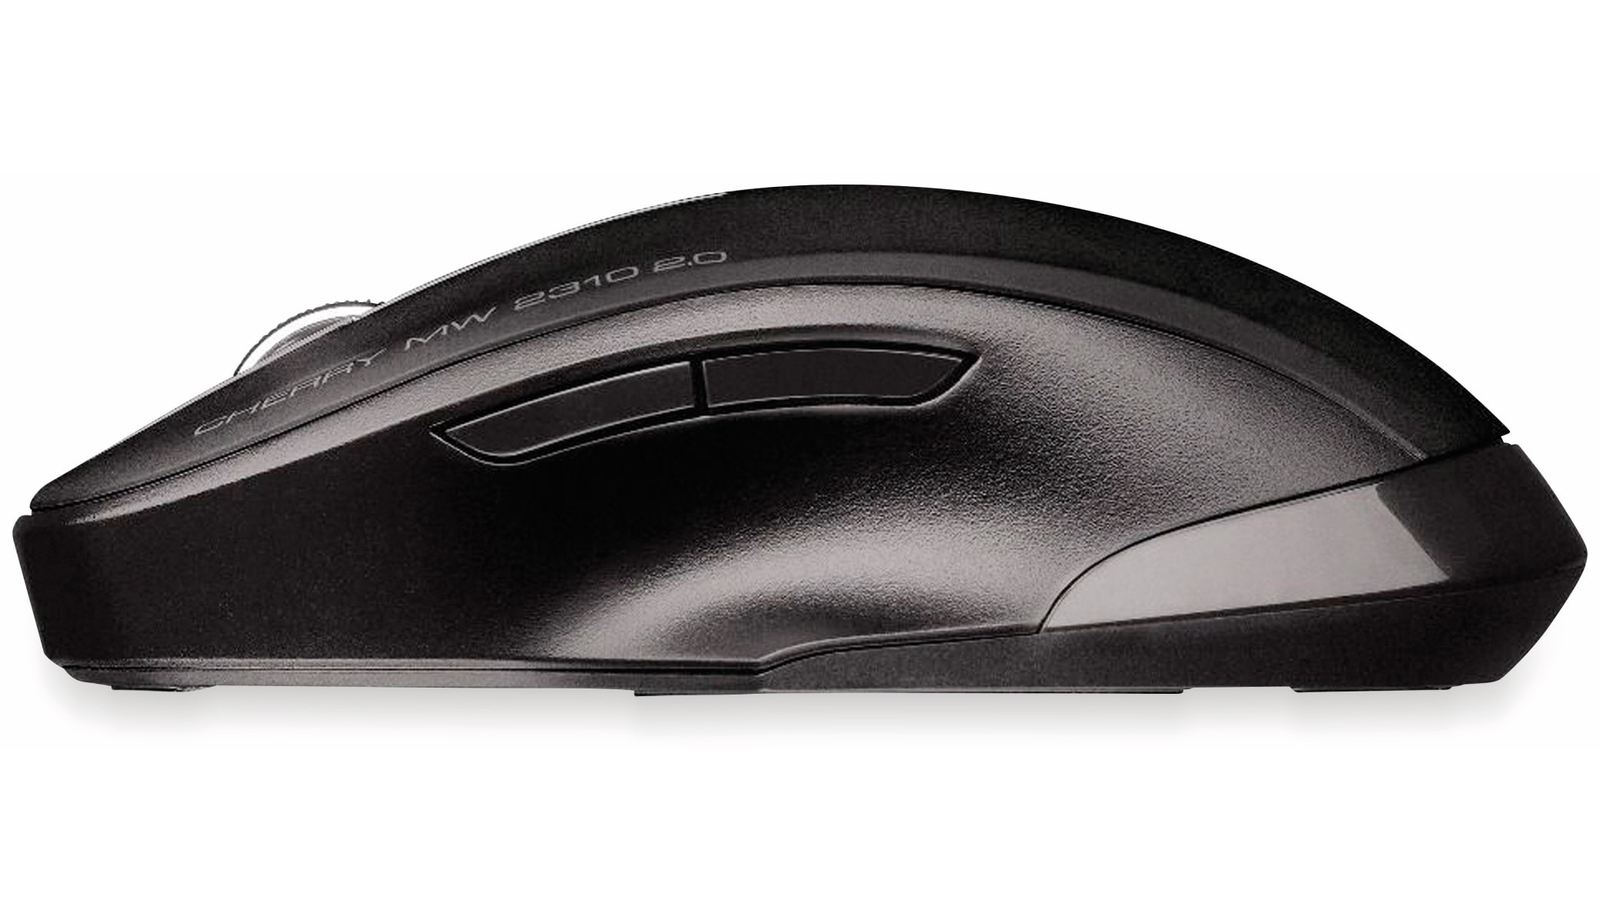 CHERRY Maus MW 2310 2.0, schwarz online kaufen